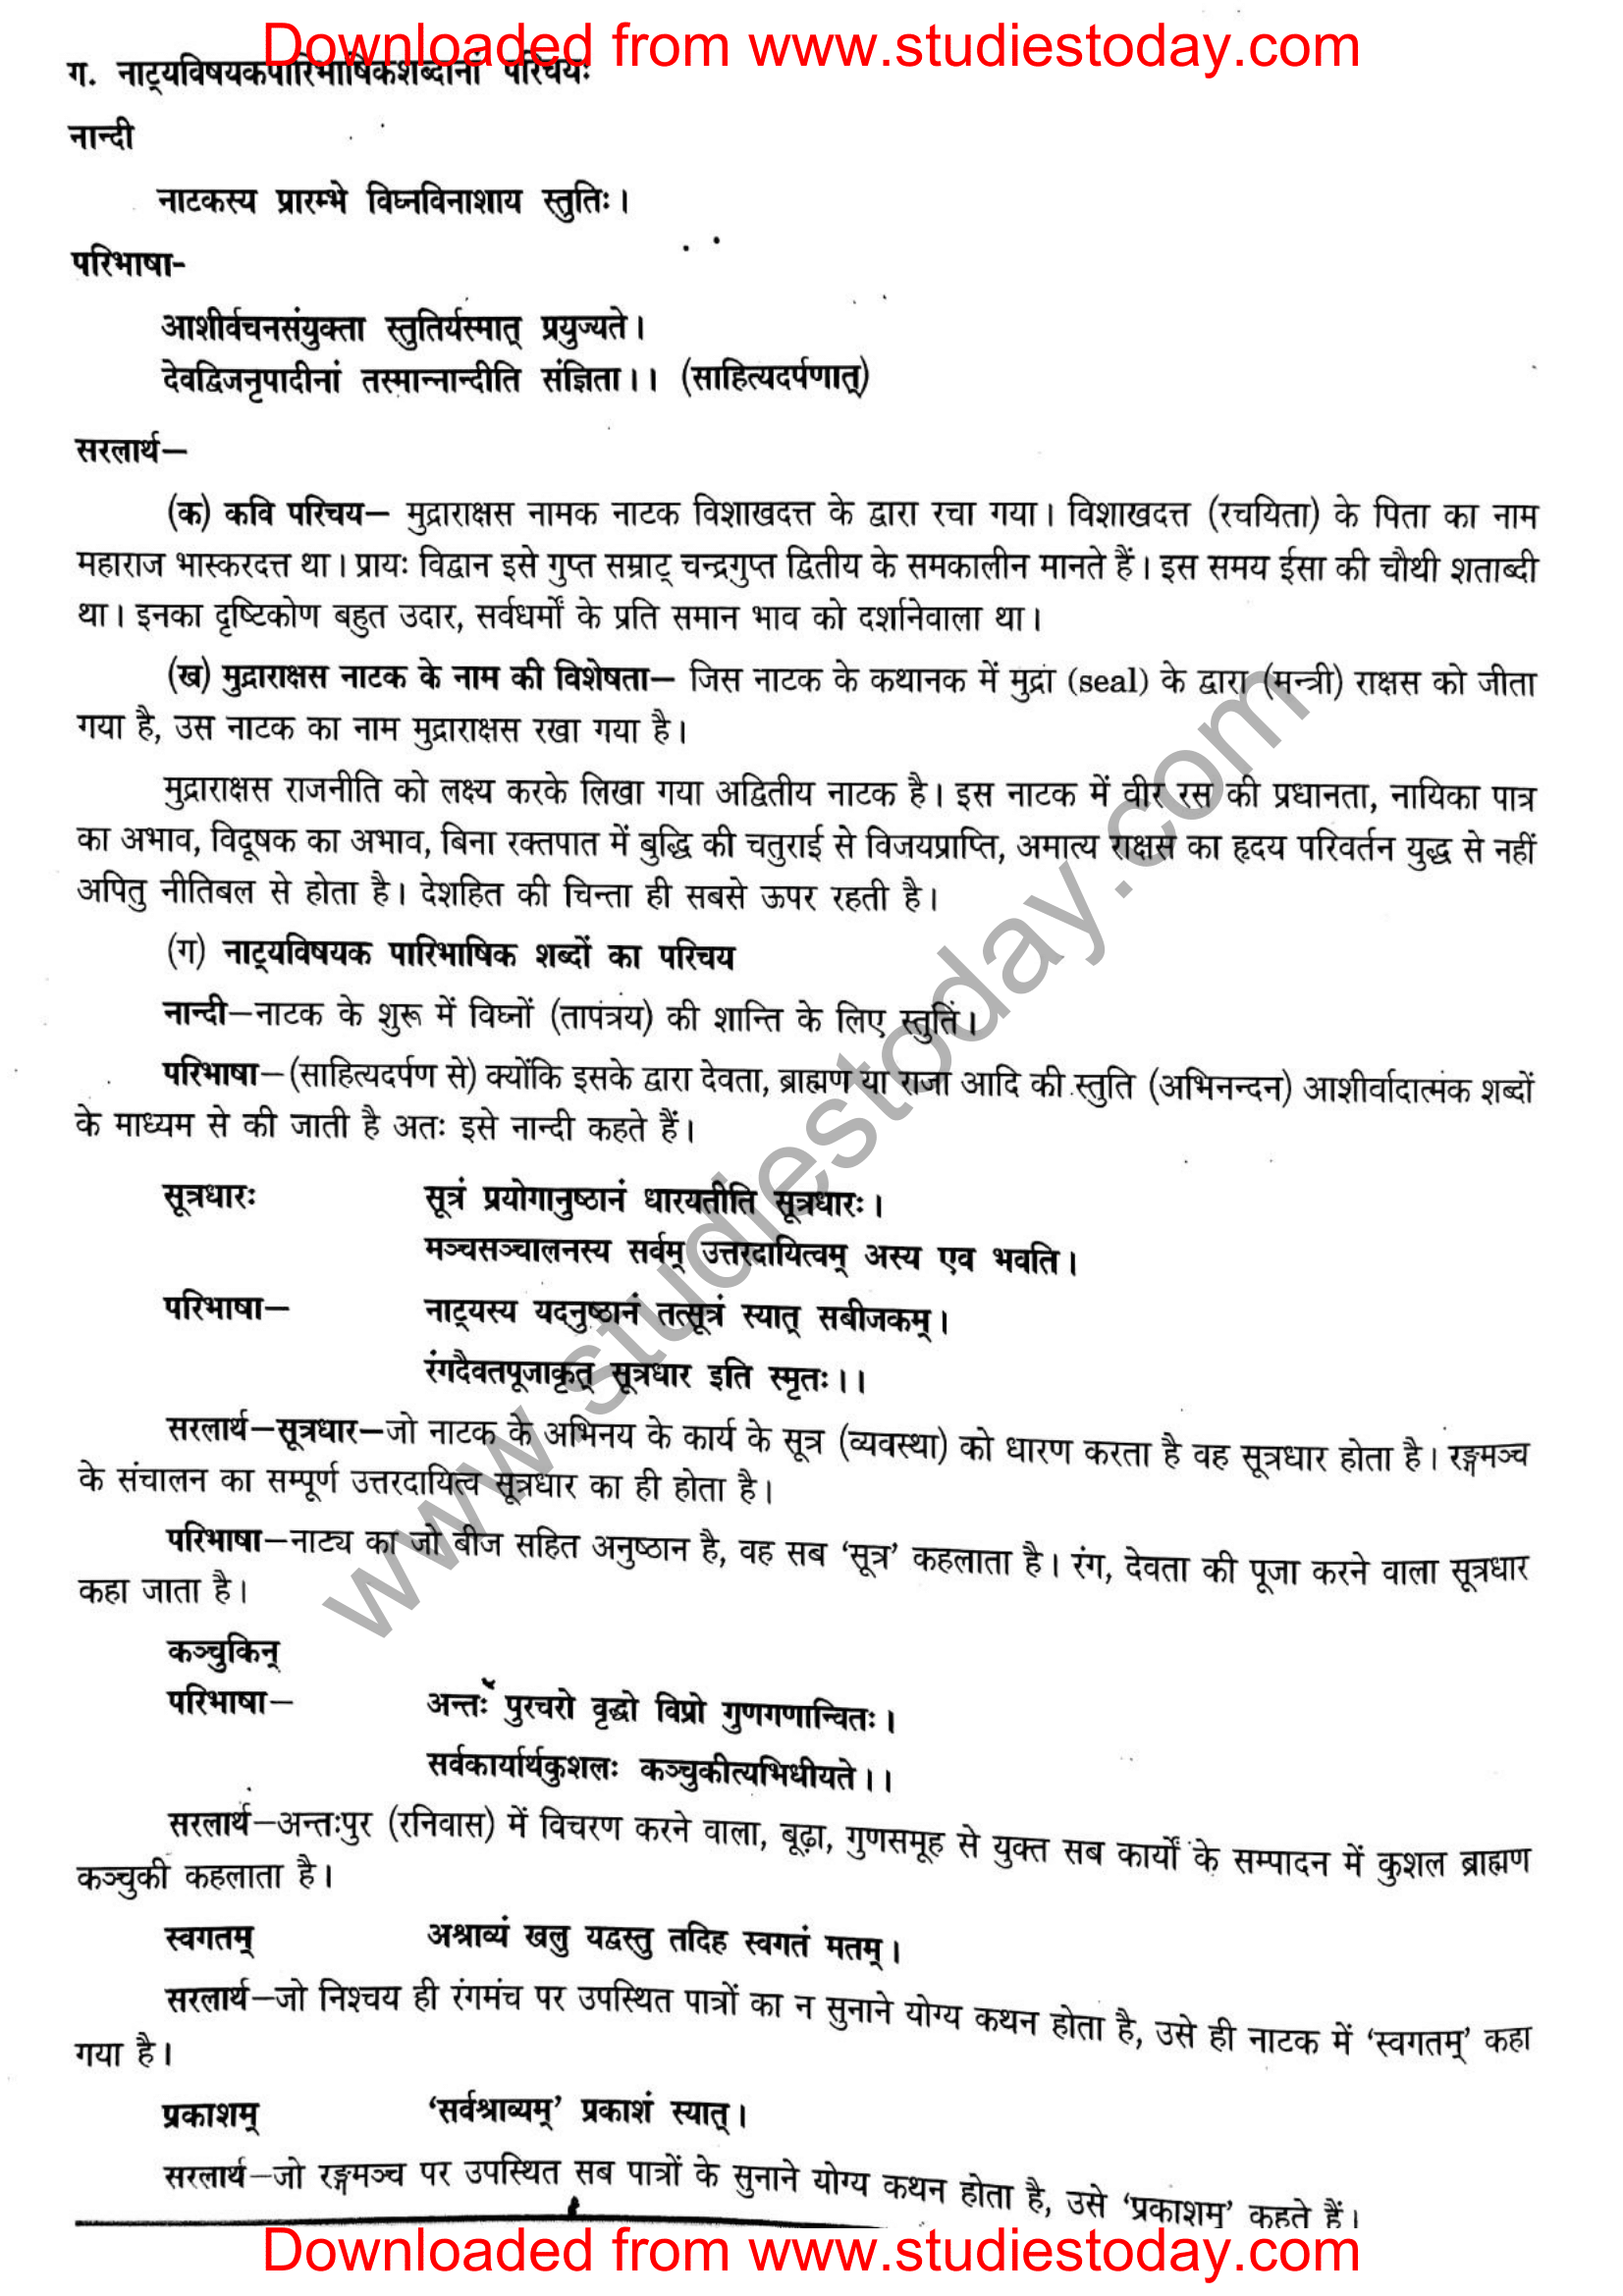 ncert-solutions-class-12-sanskrit-ritikia-chapter-3-14